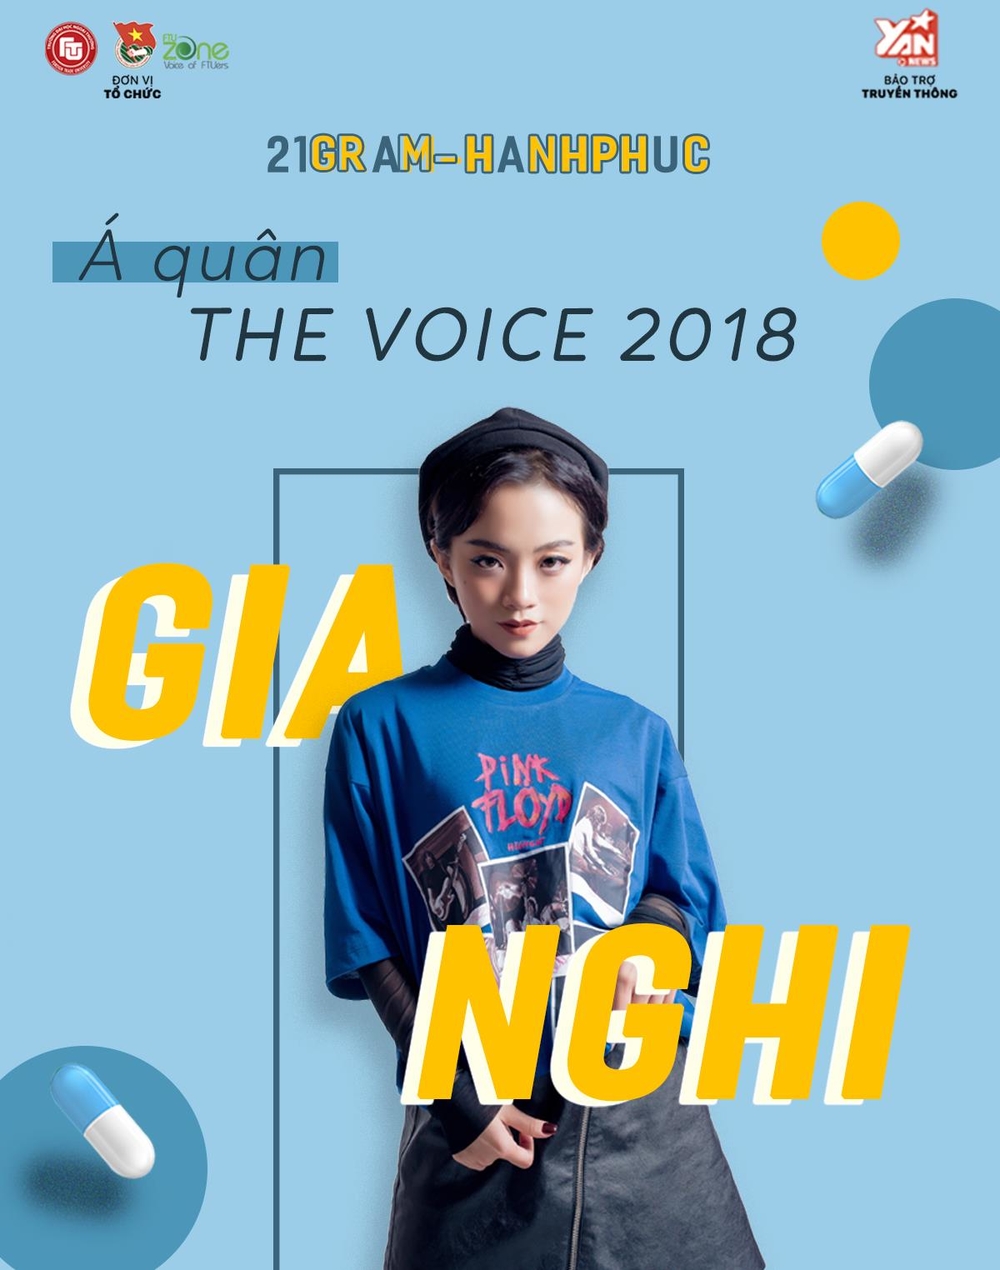 
Gia Nghi - Á quân Giọng Hát Việt 2018 - cô nàng với giọng hát được xử lý điêu luyện như “audio”.